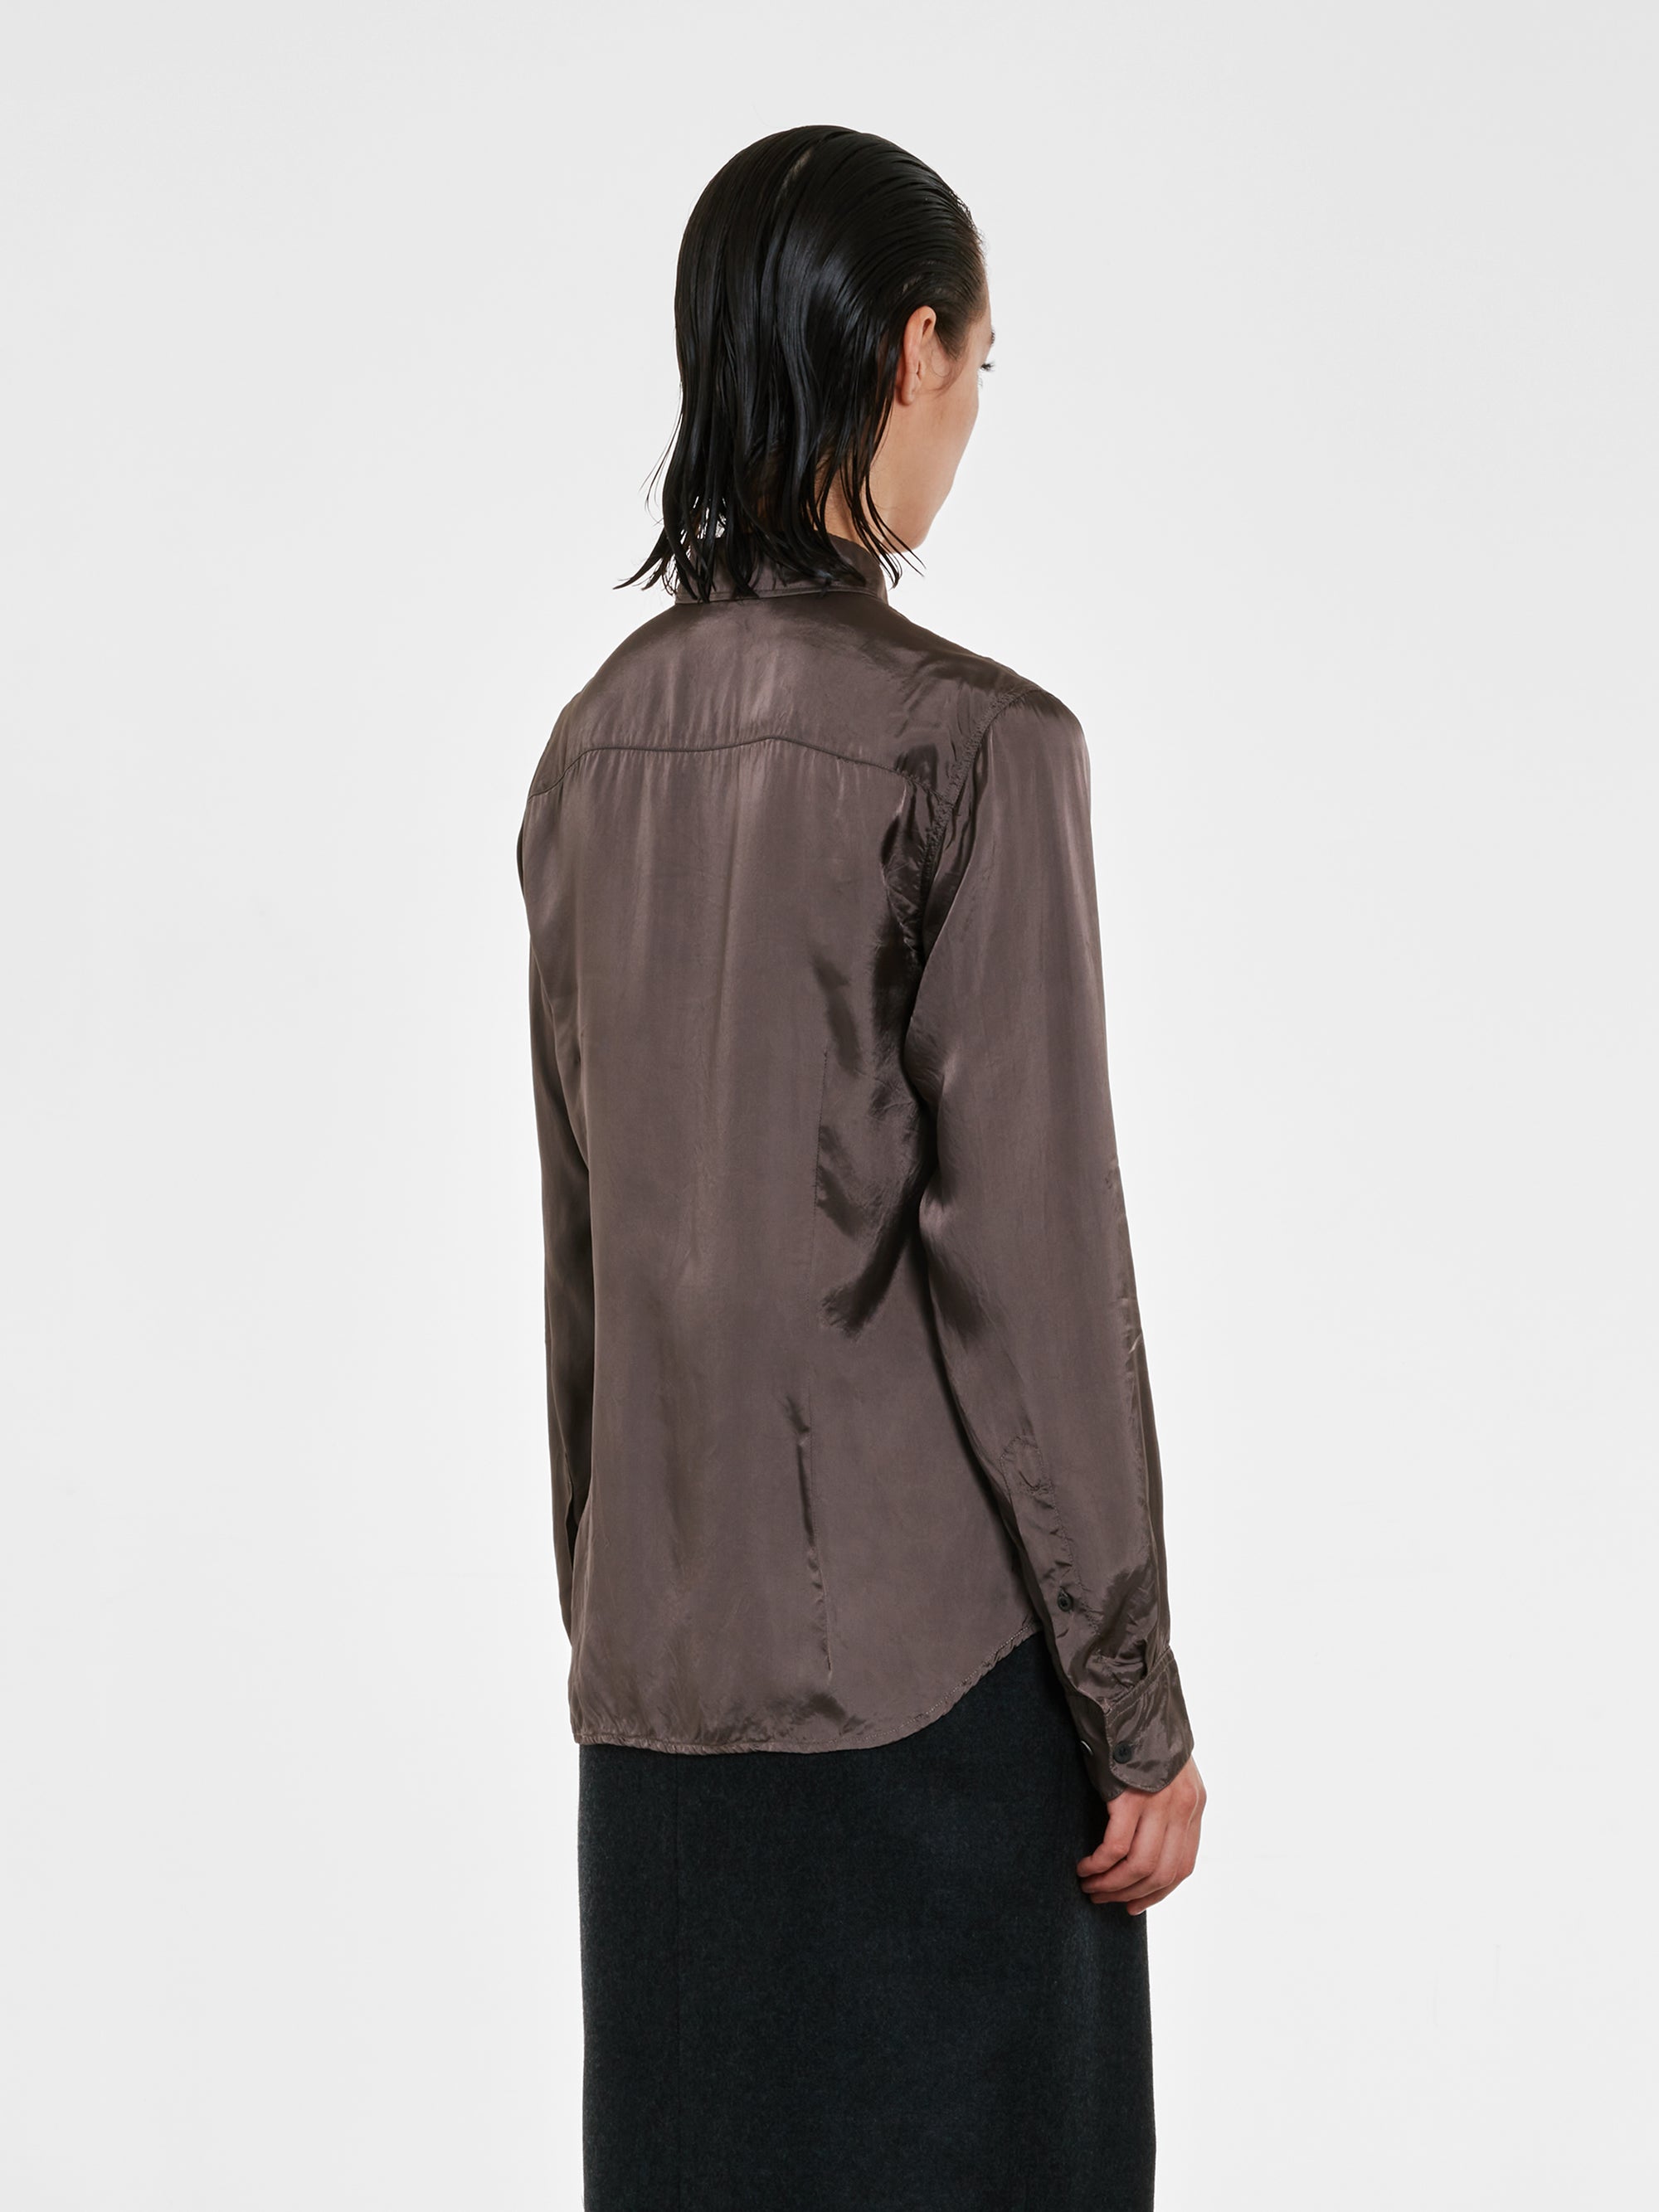 Dries Van Noten - Women's Silk Shirt - (Grey) view 3